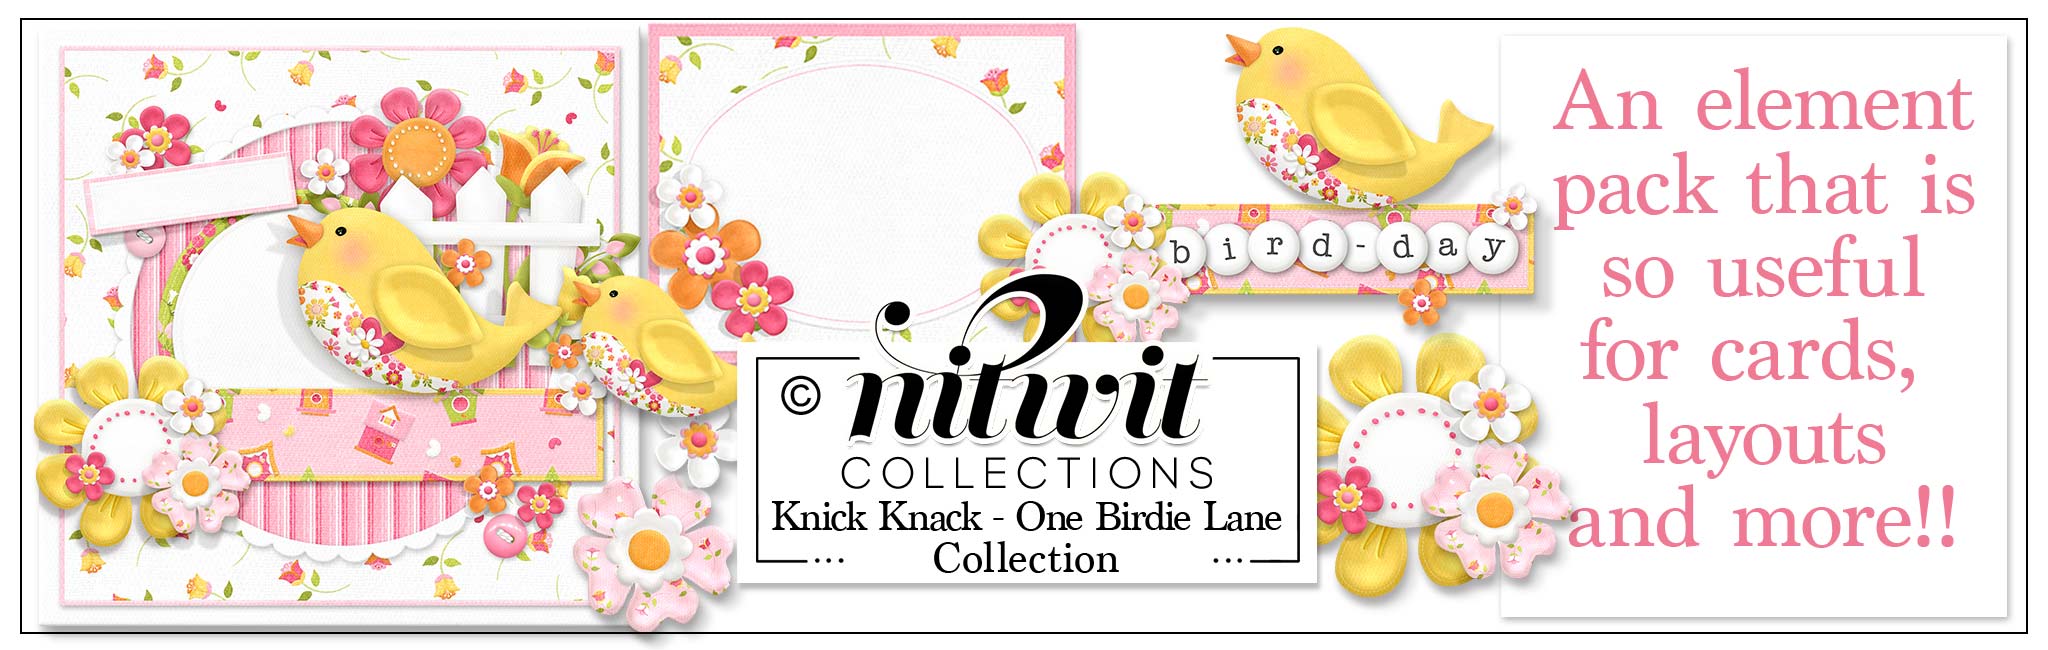 Knick Knack - One Birdie Lane